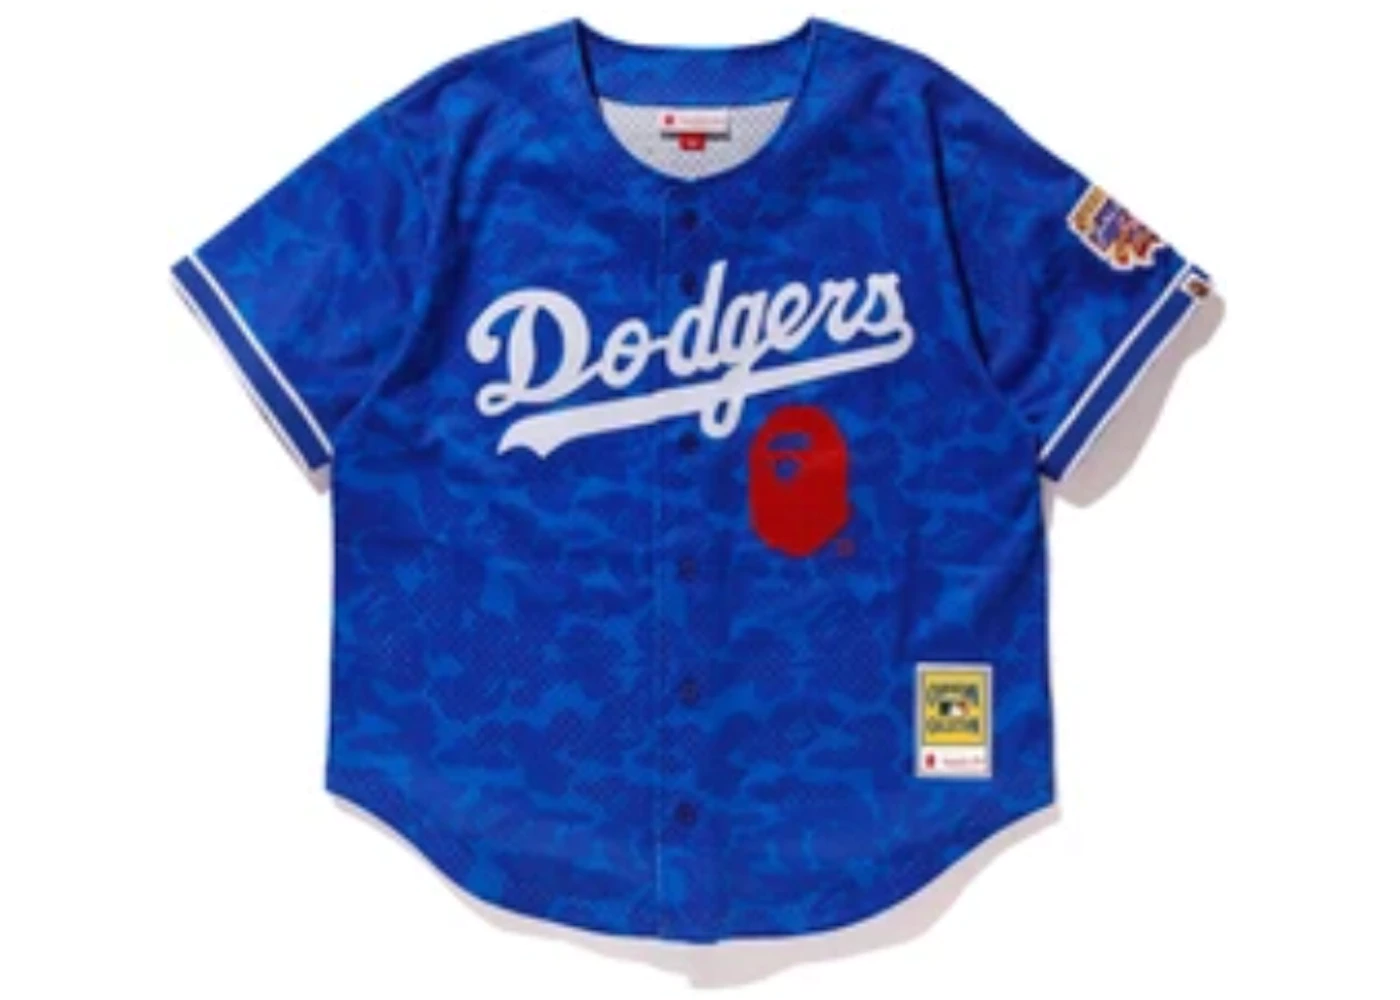 BAPE x Mitchell & Ness Dodgers Jersey Blue